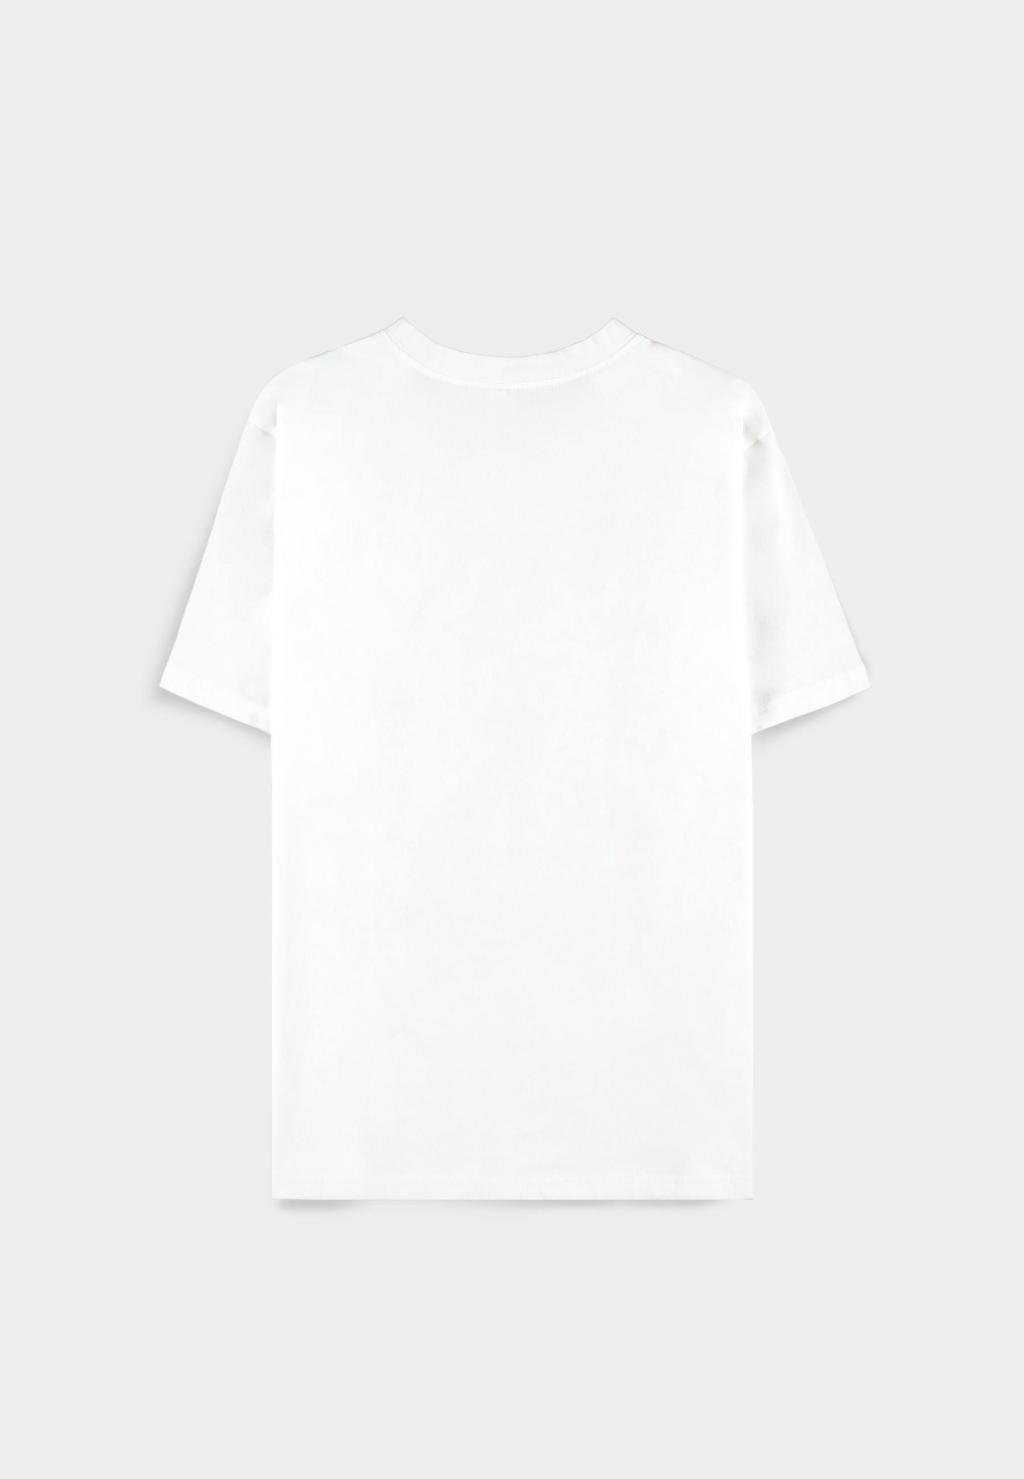 JURASSIC PARK - Herren T-Shirt (2XL)